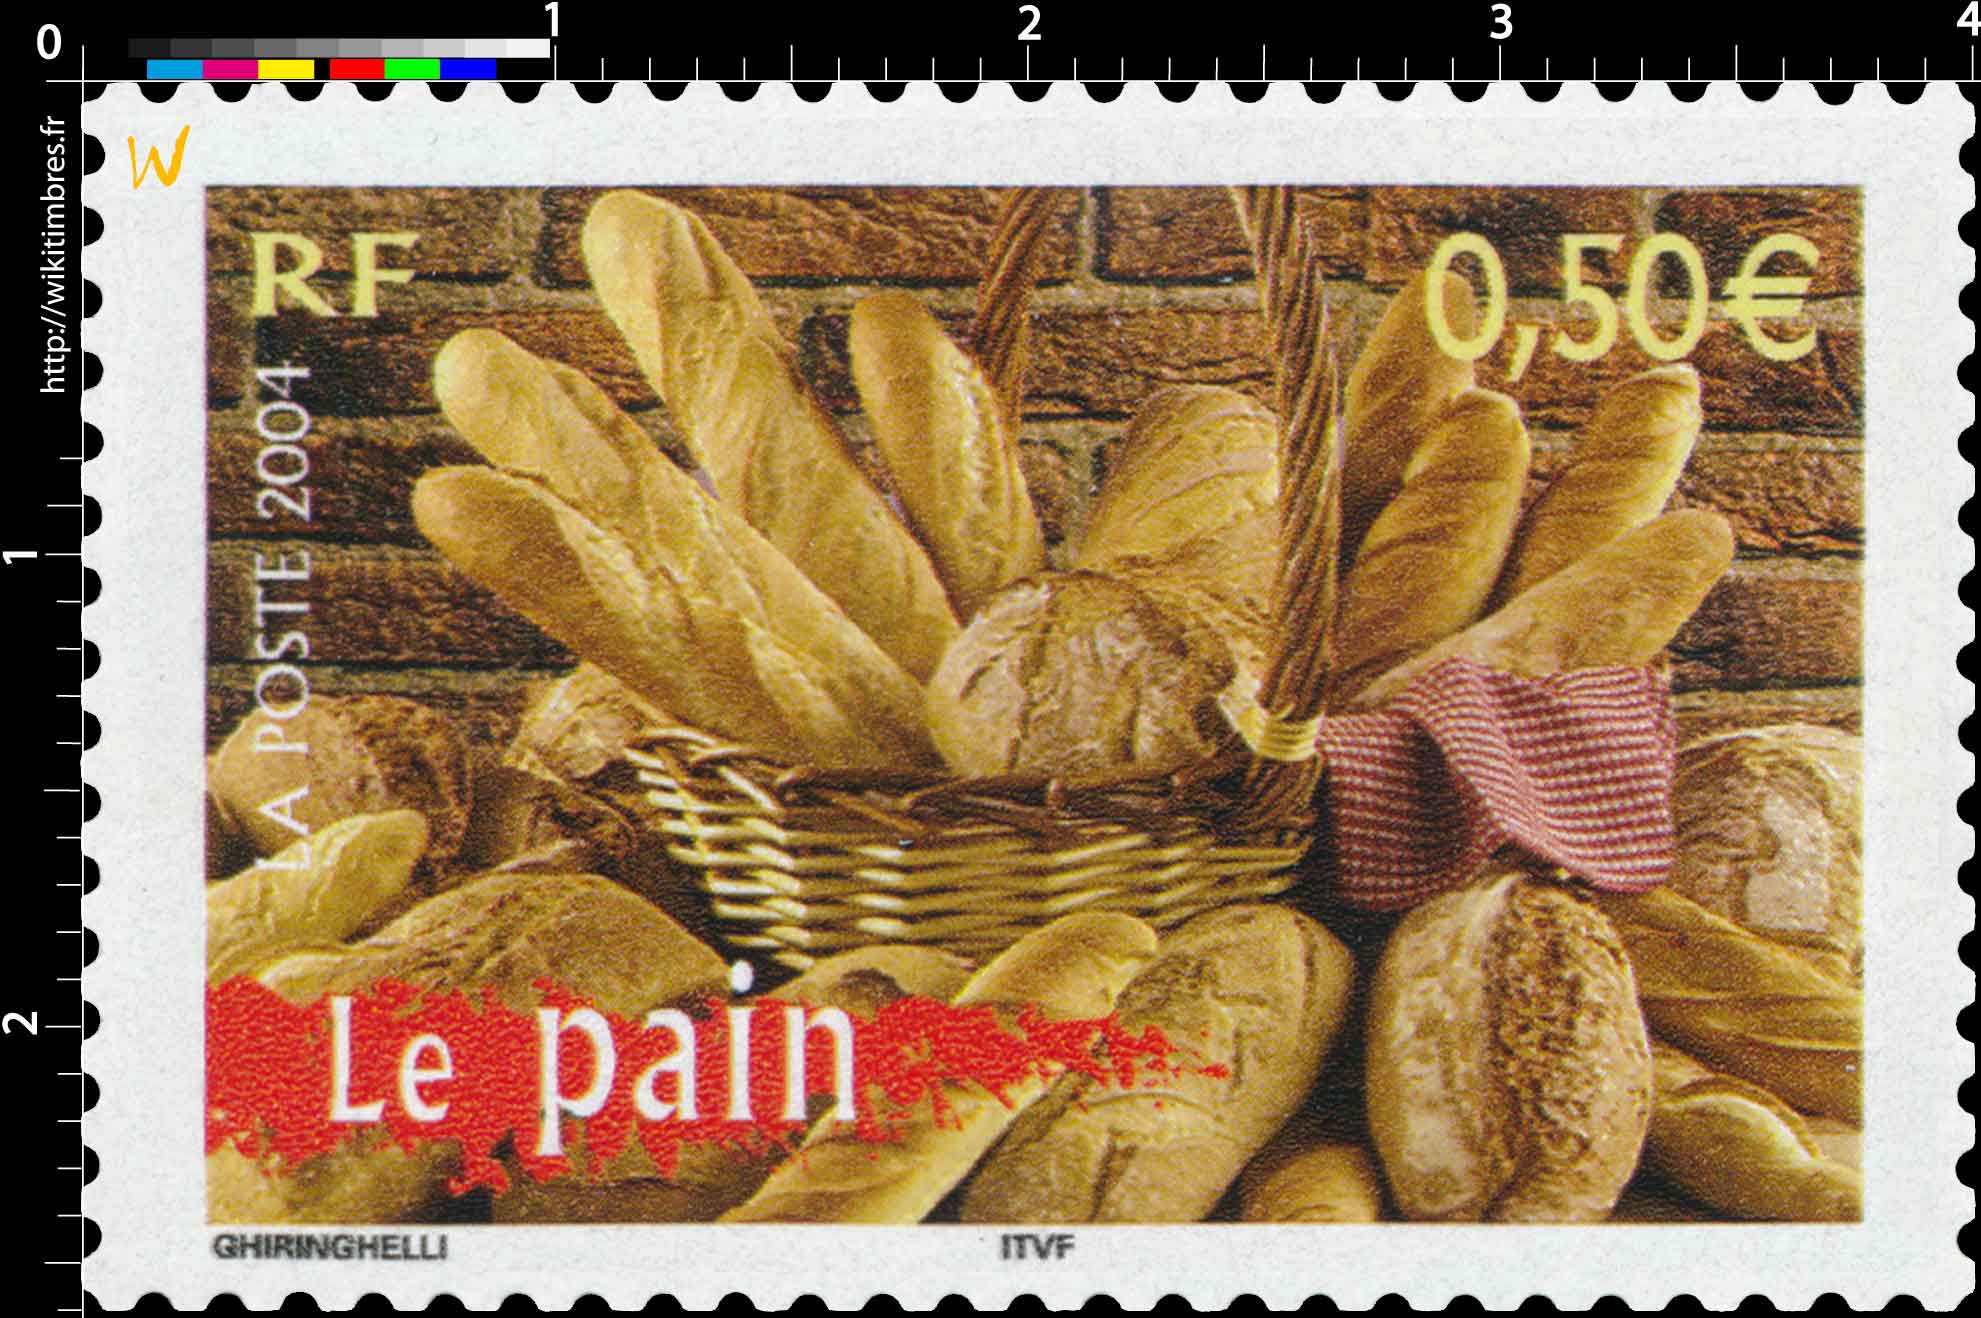 2004 Le pain